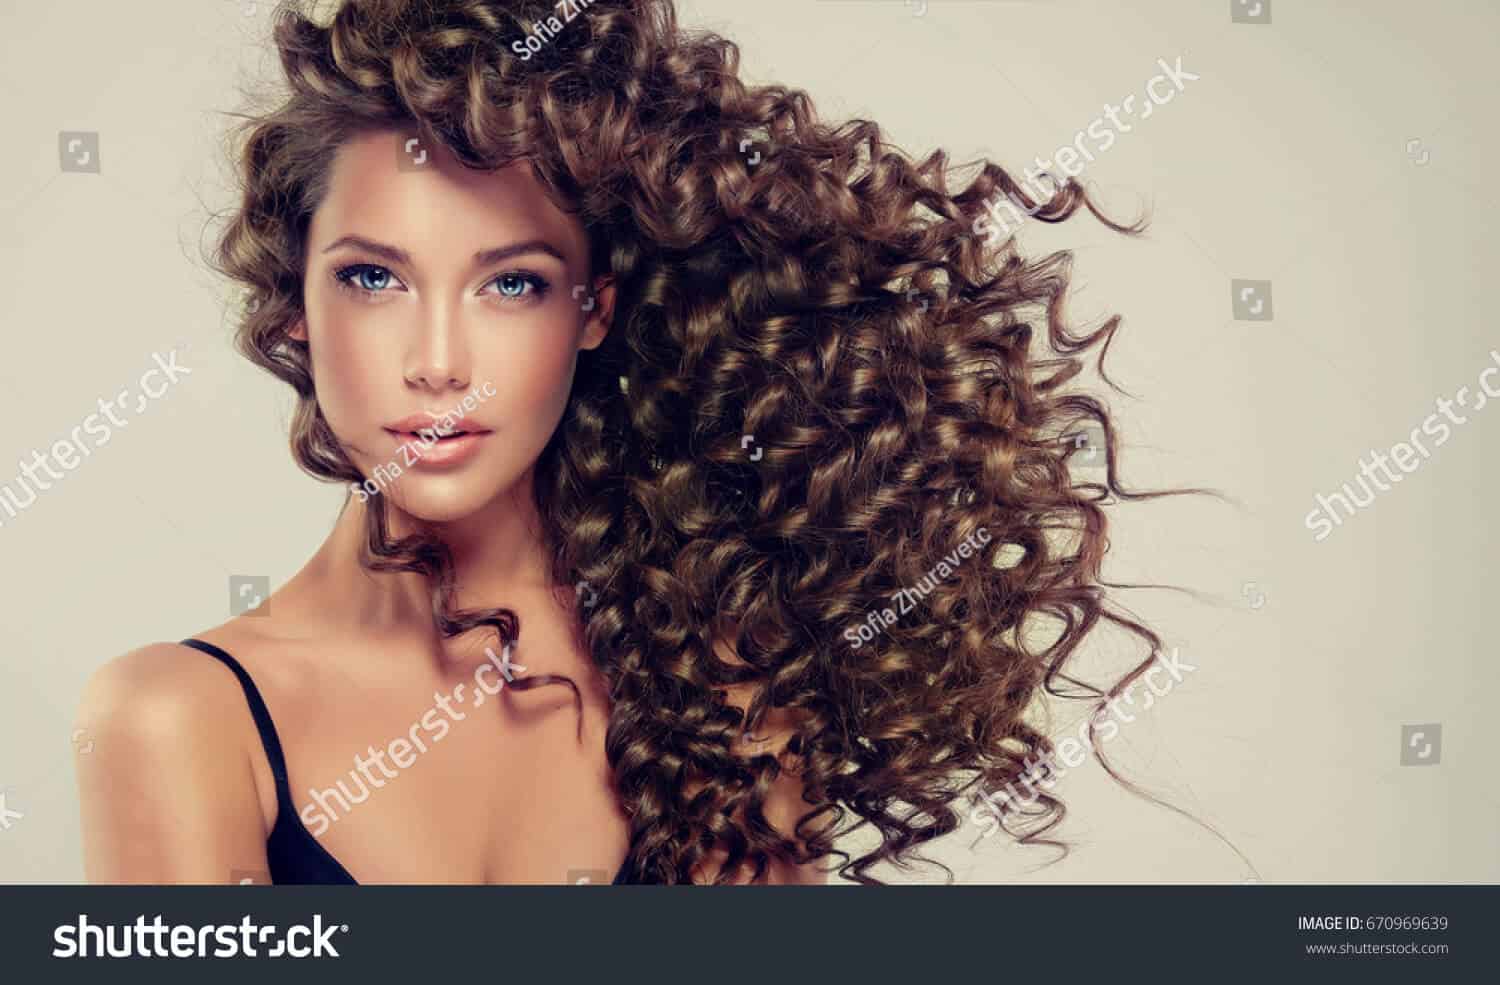 11 triệu hình ảnh mái tóc của các cô gái trẻ chất lượng cao trên Shutterstock